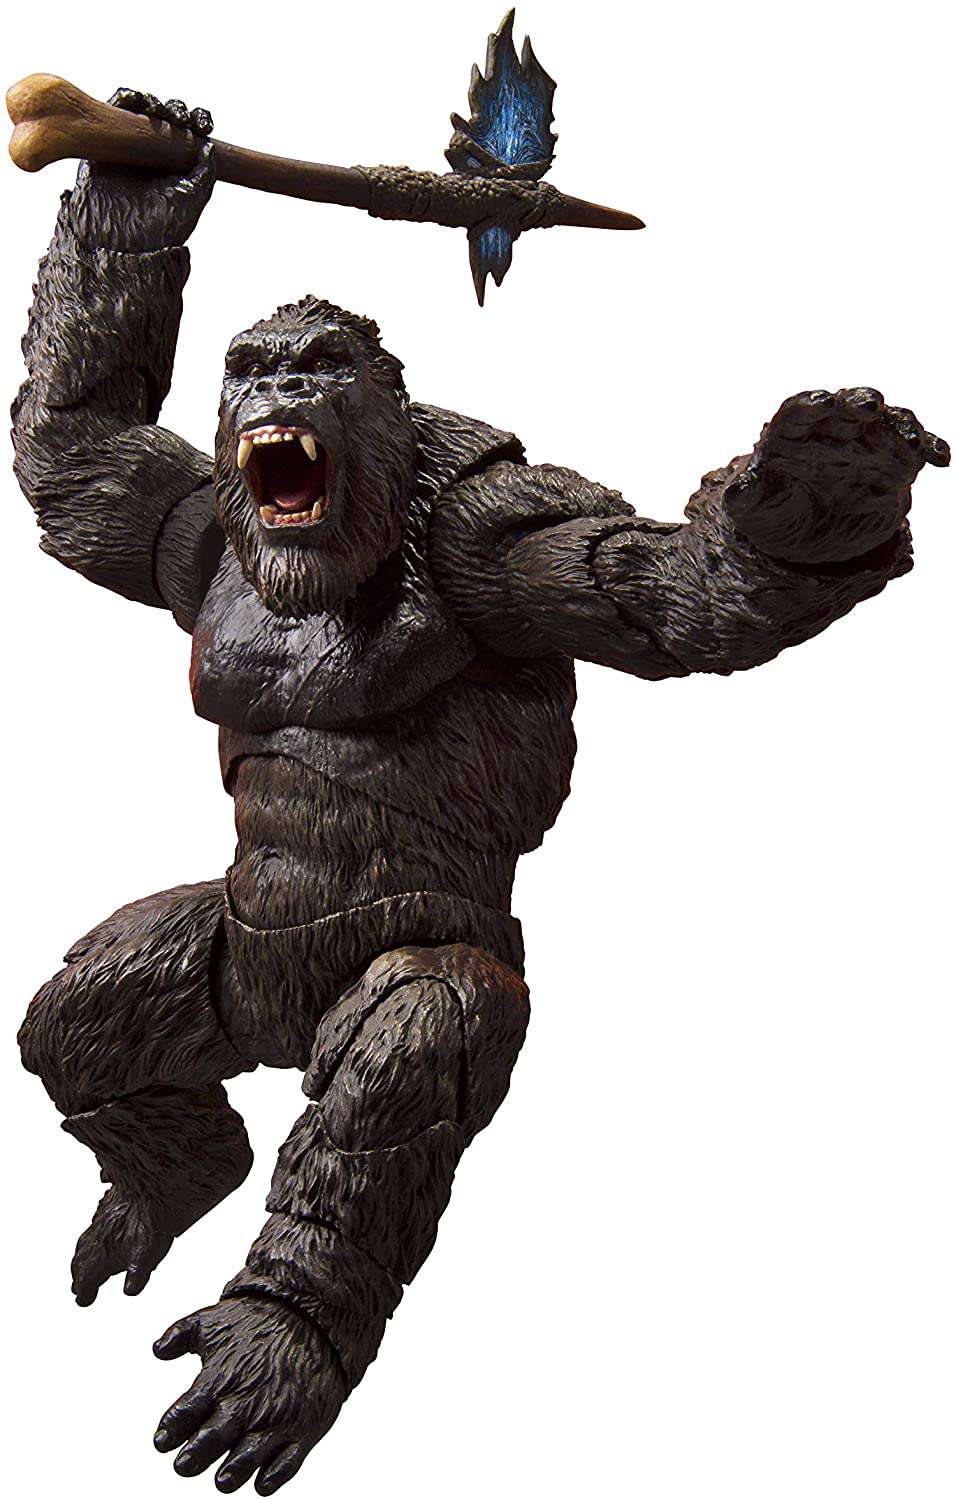 Bandai Japan Godzilla Vs Kong S.H. Monsterarts King Kong Godzilla